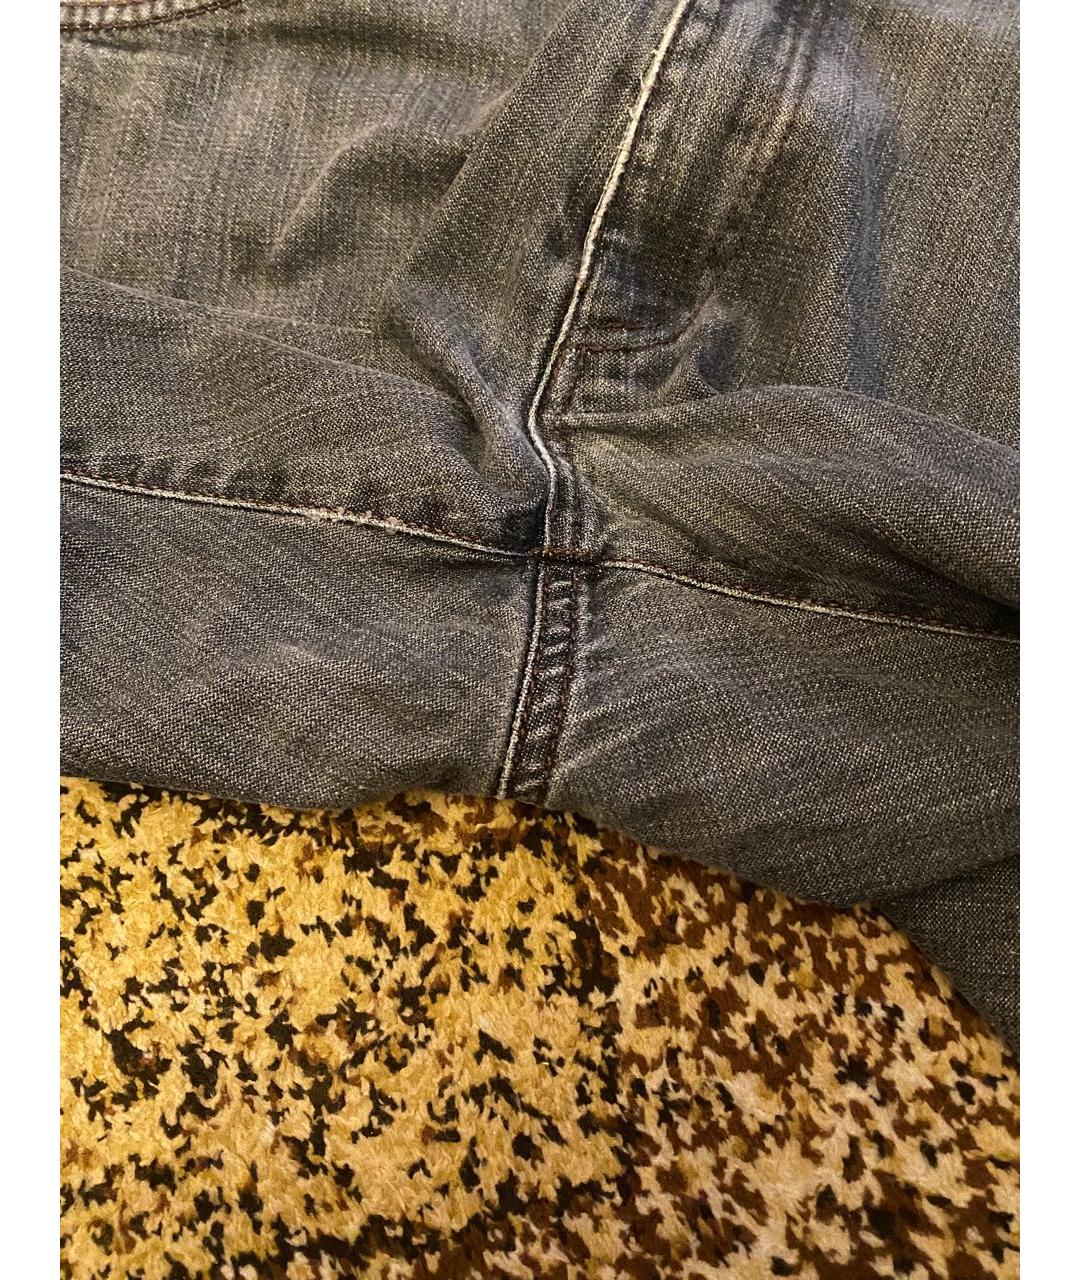 DOLCE&GABBANA Серые хлопковые прямые джинсы, фото 5